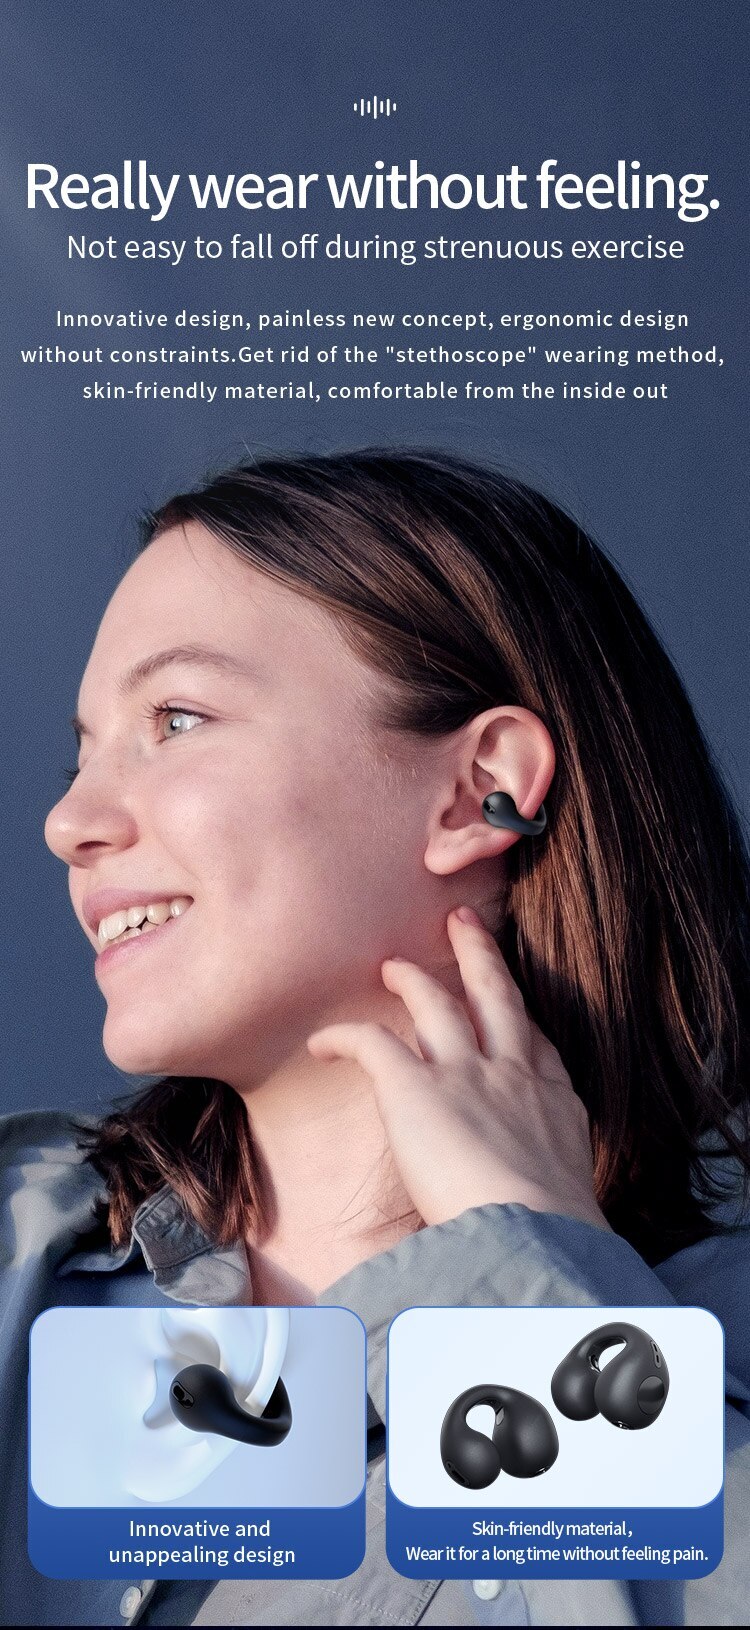 T75 bezprzewodowe słuchawki słuchawki Bluetooth słuchawki na zewnątrz sportowy zestaw słuchawkowy 5.3 z koszem do ładowania wkładki do sterowania dotykowym dla Muisc